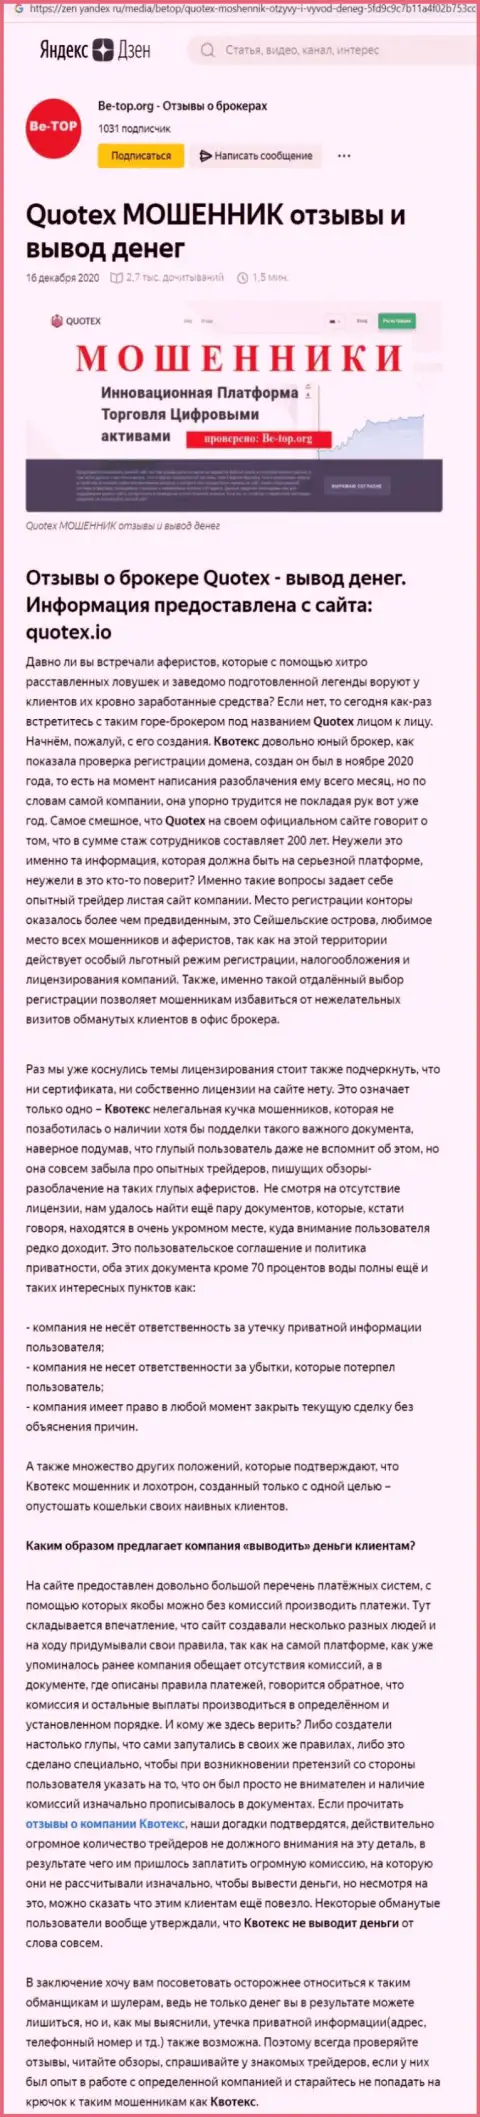 Обзор скам-организации Квотекс - это МОШЕННИКИ !!!